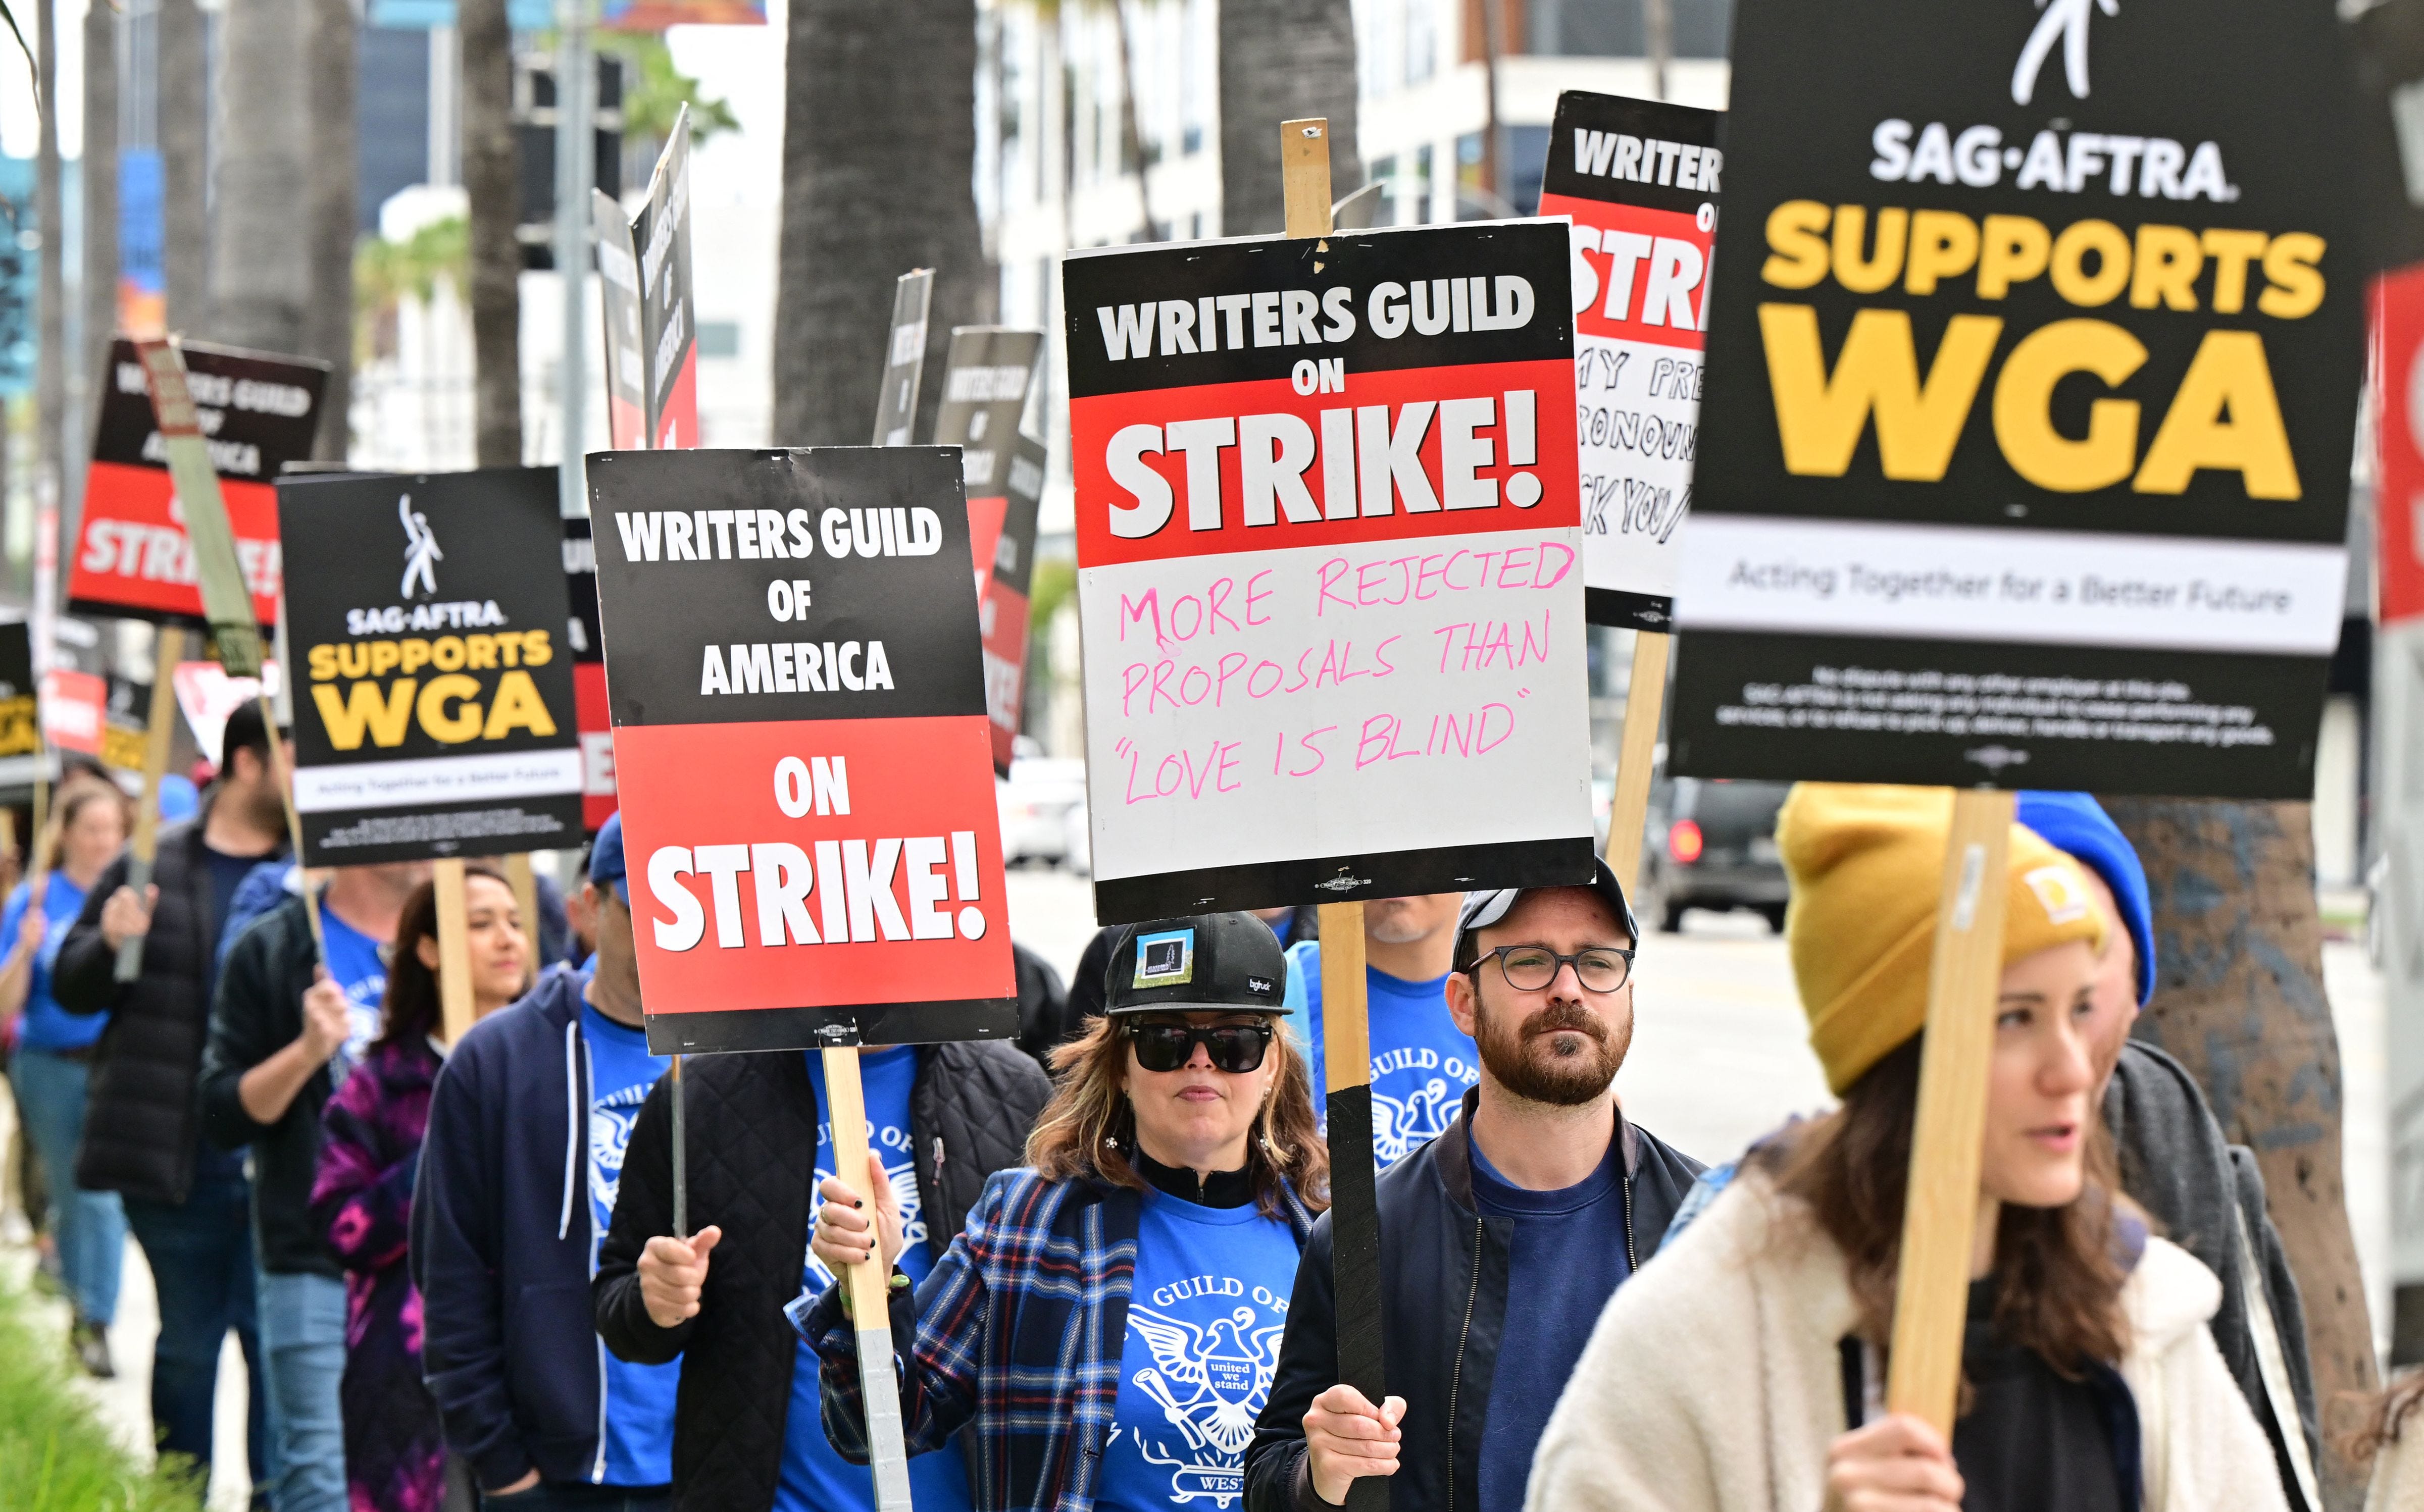 Streikende Schriftsteller marschieren am vierten Tag des Streiks der Writers Guild of America vor Netflix in Hollywood, Kalifornien, am 5. Mai 2023 mit Schildern an der Streikpostenlinie.